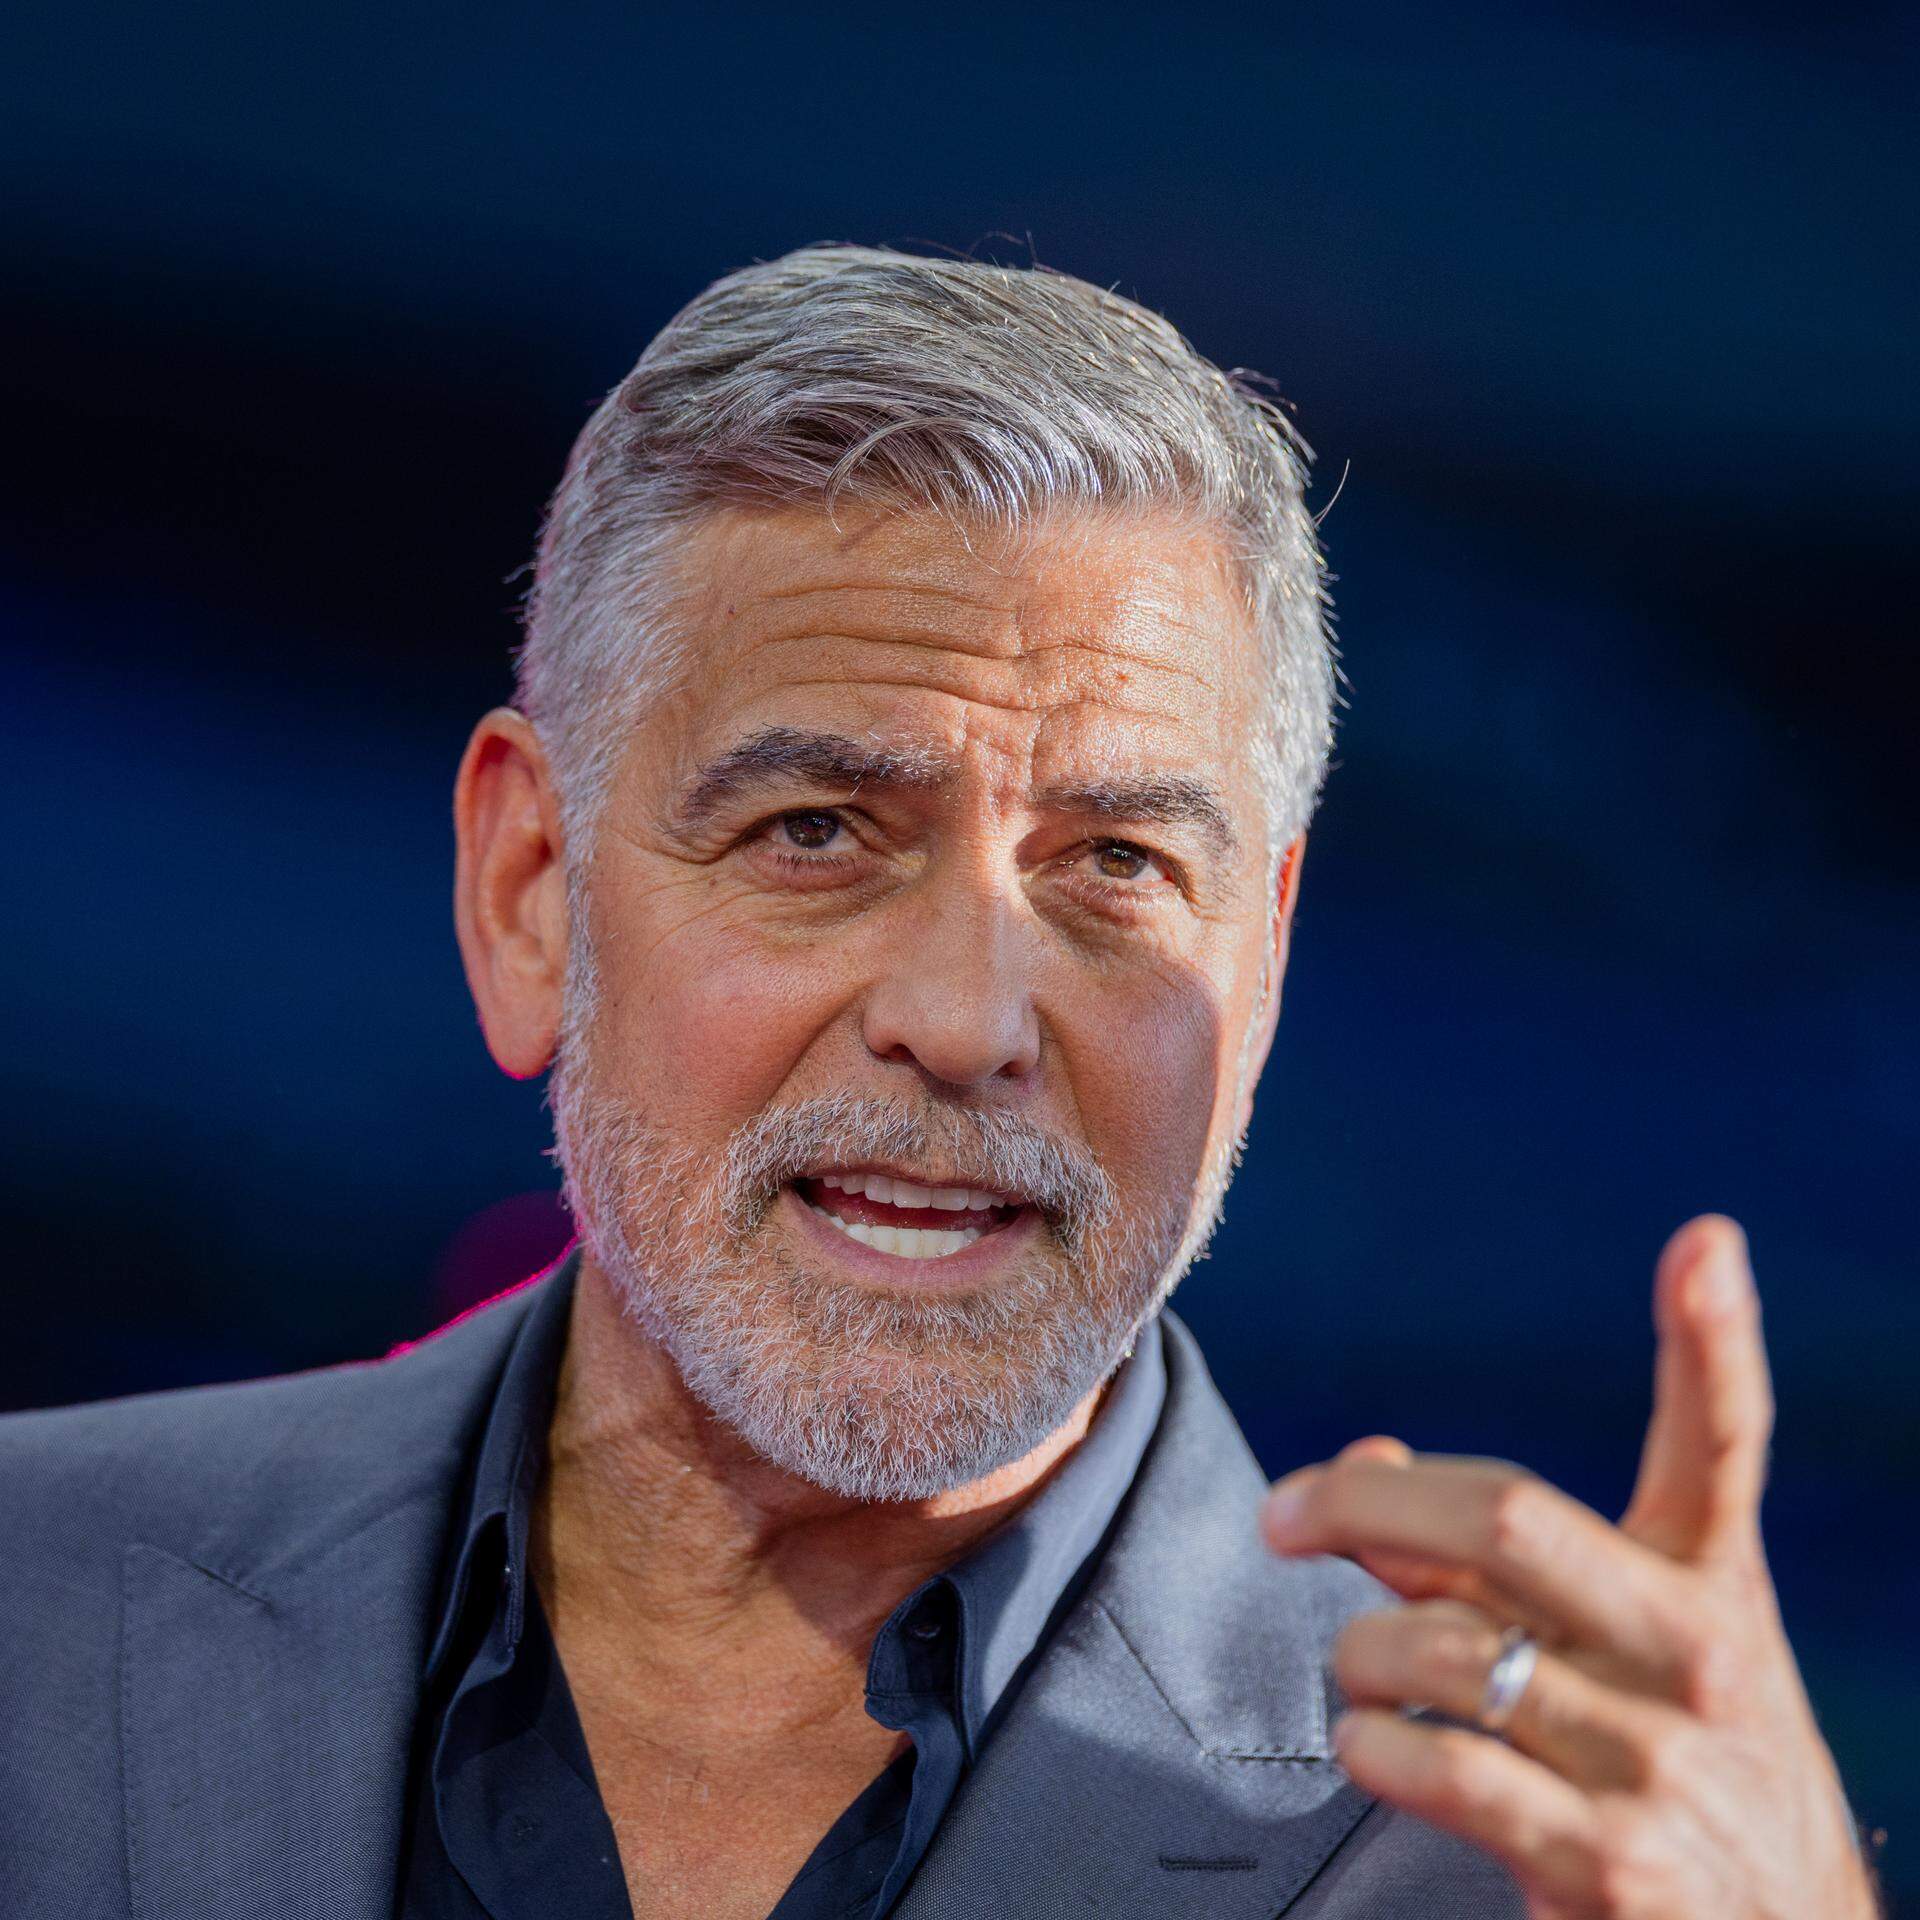 ARCHIV - 20.09.2023, Nordrhein-Westfalen, Köln: George Clooney, US-amerikanischer Schauspieler, spricht beim Internetkongress Digital X der Deutschen Telekom im Media Park. (zu dpa "Clooney scherzt über neuen Film mit Brad Pitt: «Er brauchte Arbeit») Foto: Rolf Vennenbernd/dpa +++ dpa-Bildfunk +++